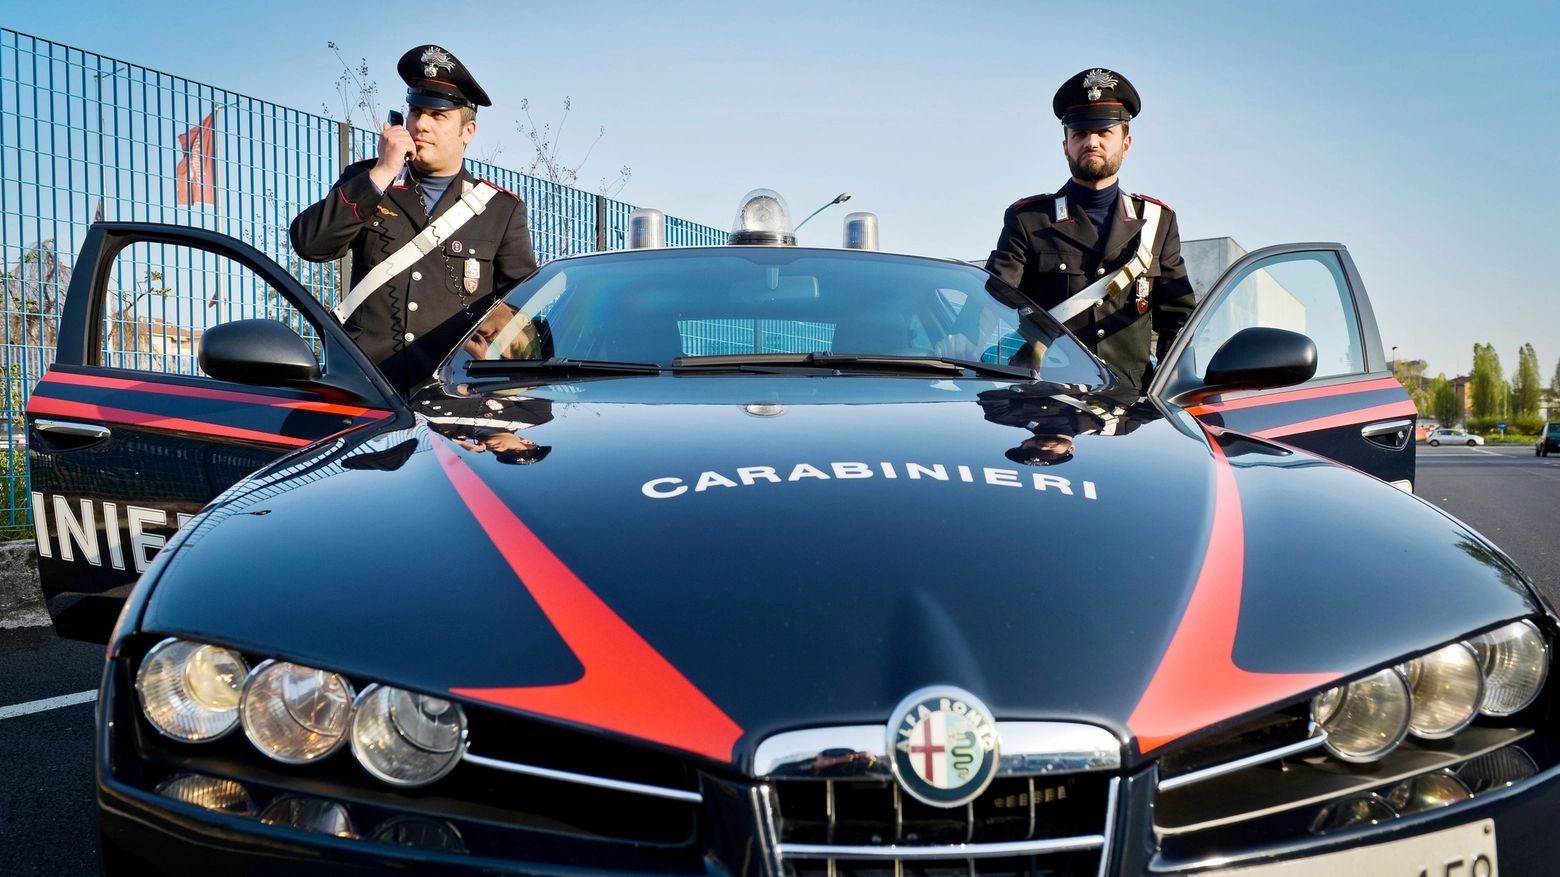 Le indagini sono state effettuate dai carabinieri di Tavazzano